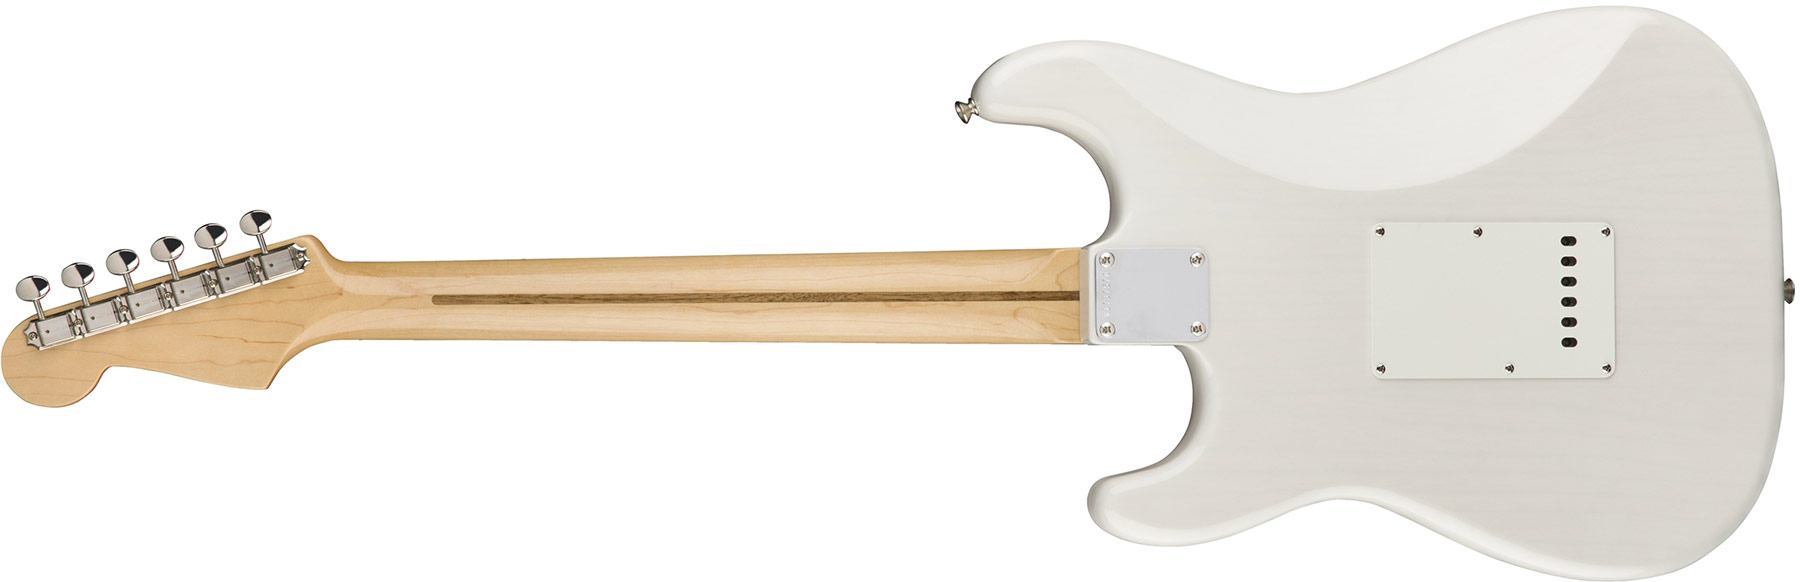 Fender Strat '50s American Original Usa Sss Mn - White Blonde - Elektrische gitaar in Str-vorm - Variation 2